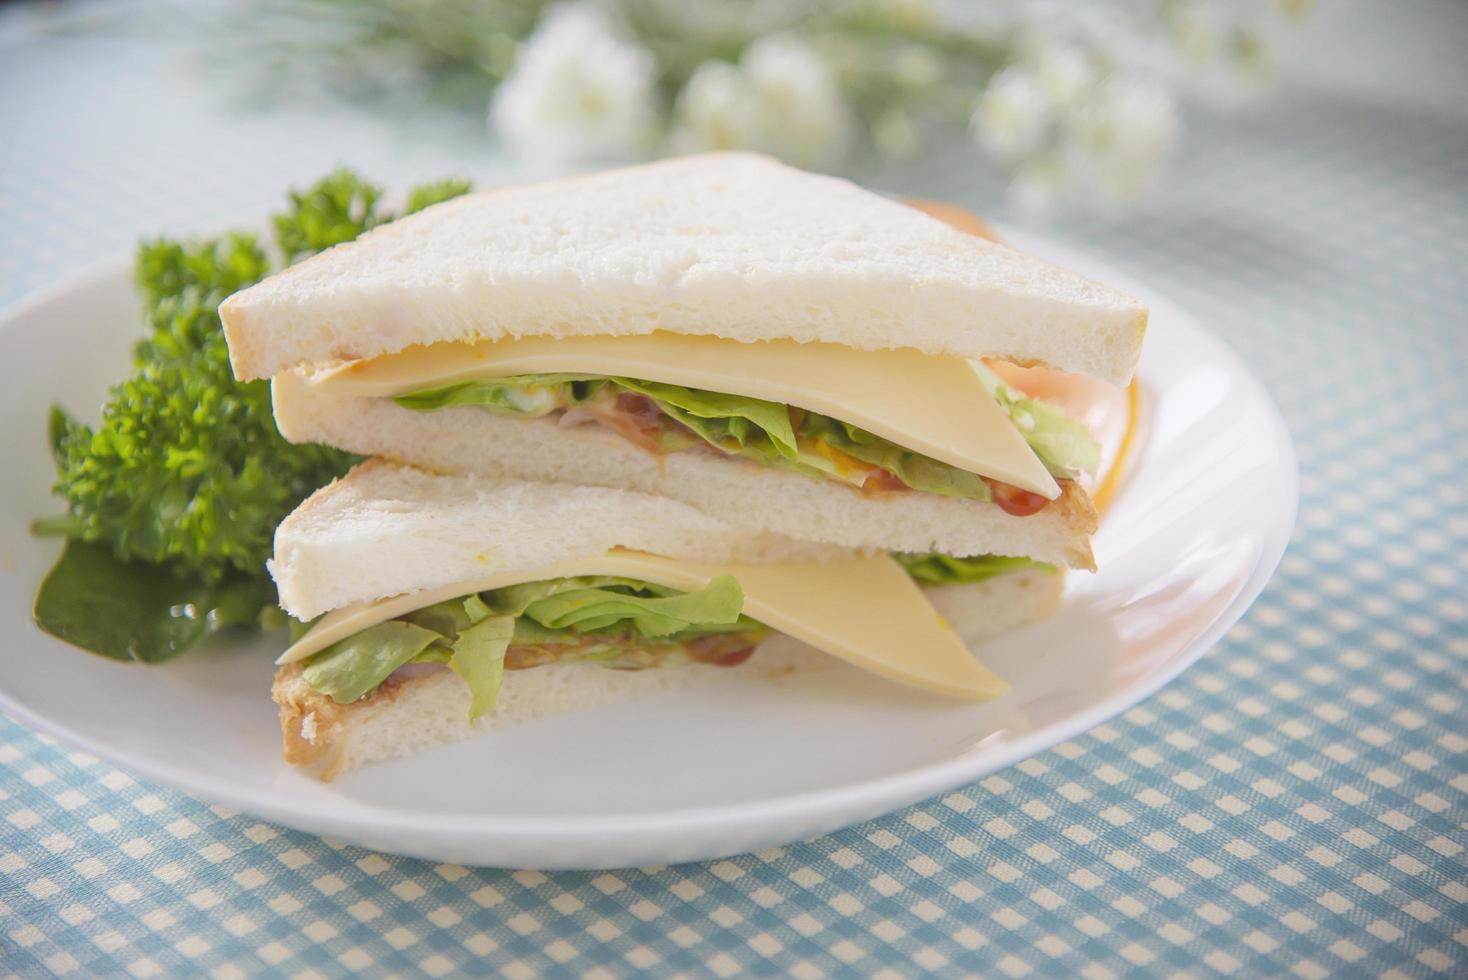 zelfgemaakte sanwich ontbijtset op een tafel - fastfood ochtendset concept foto